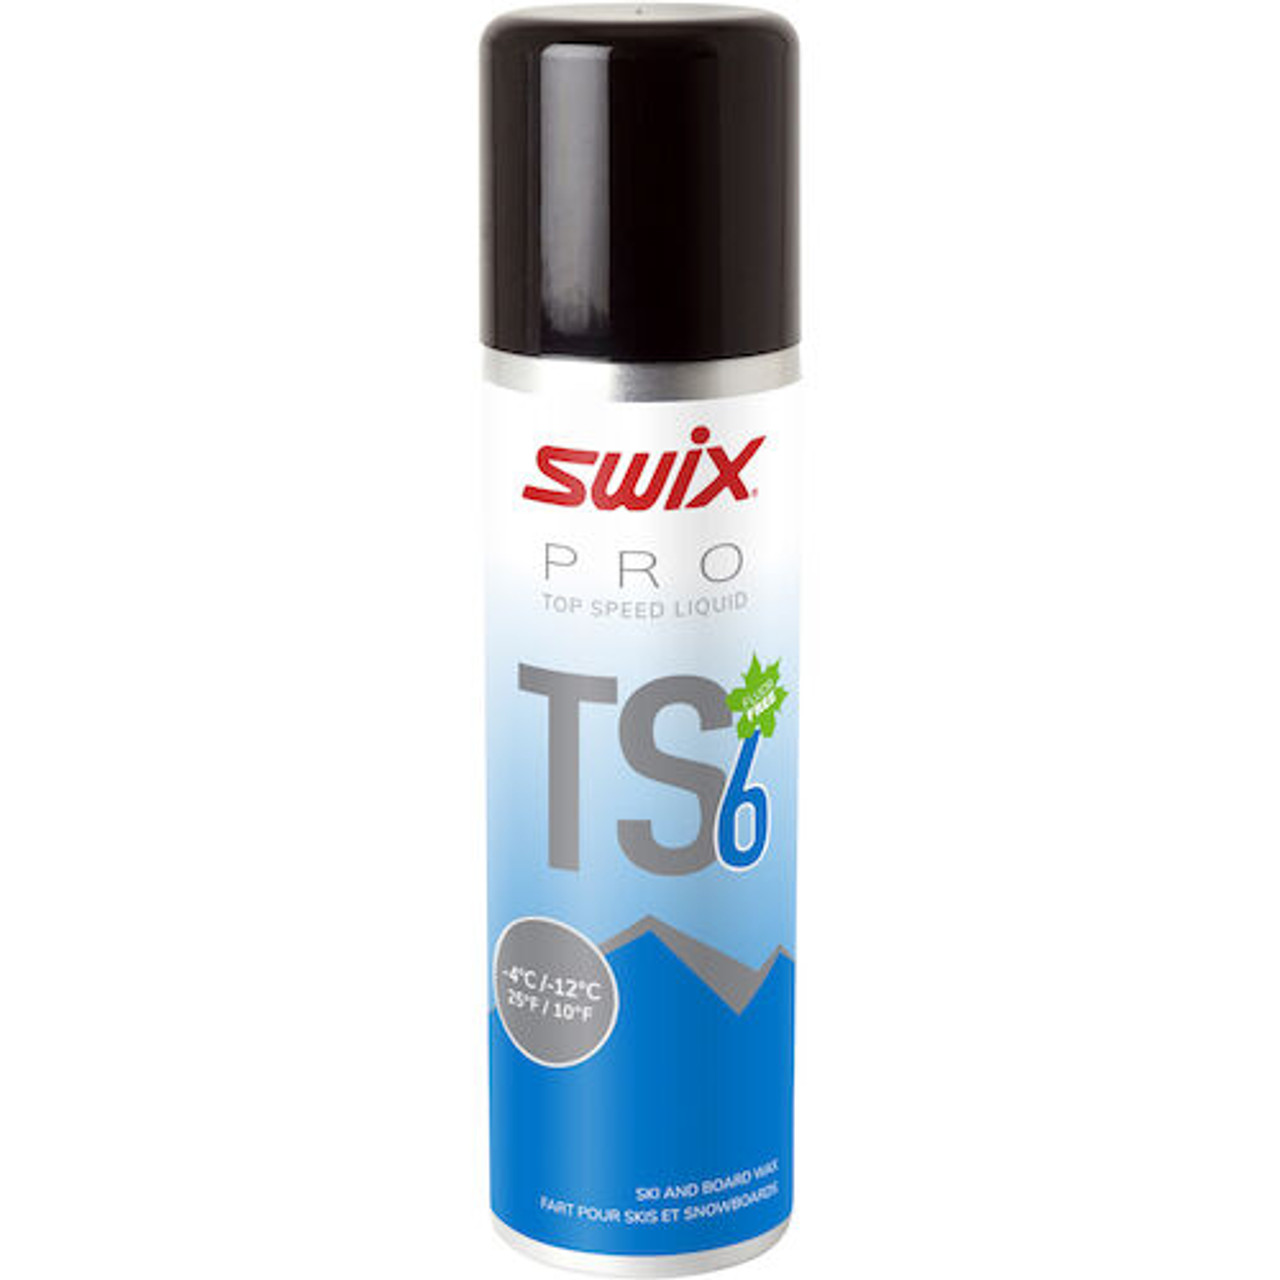 Swix TS6 Liquid Wax